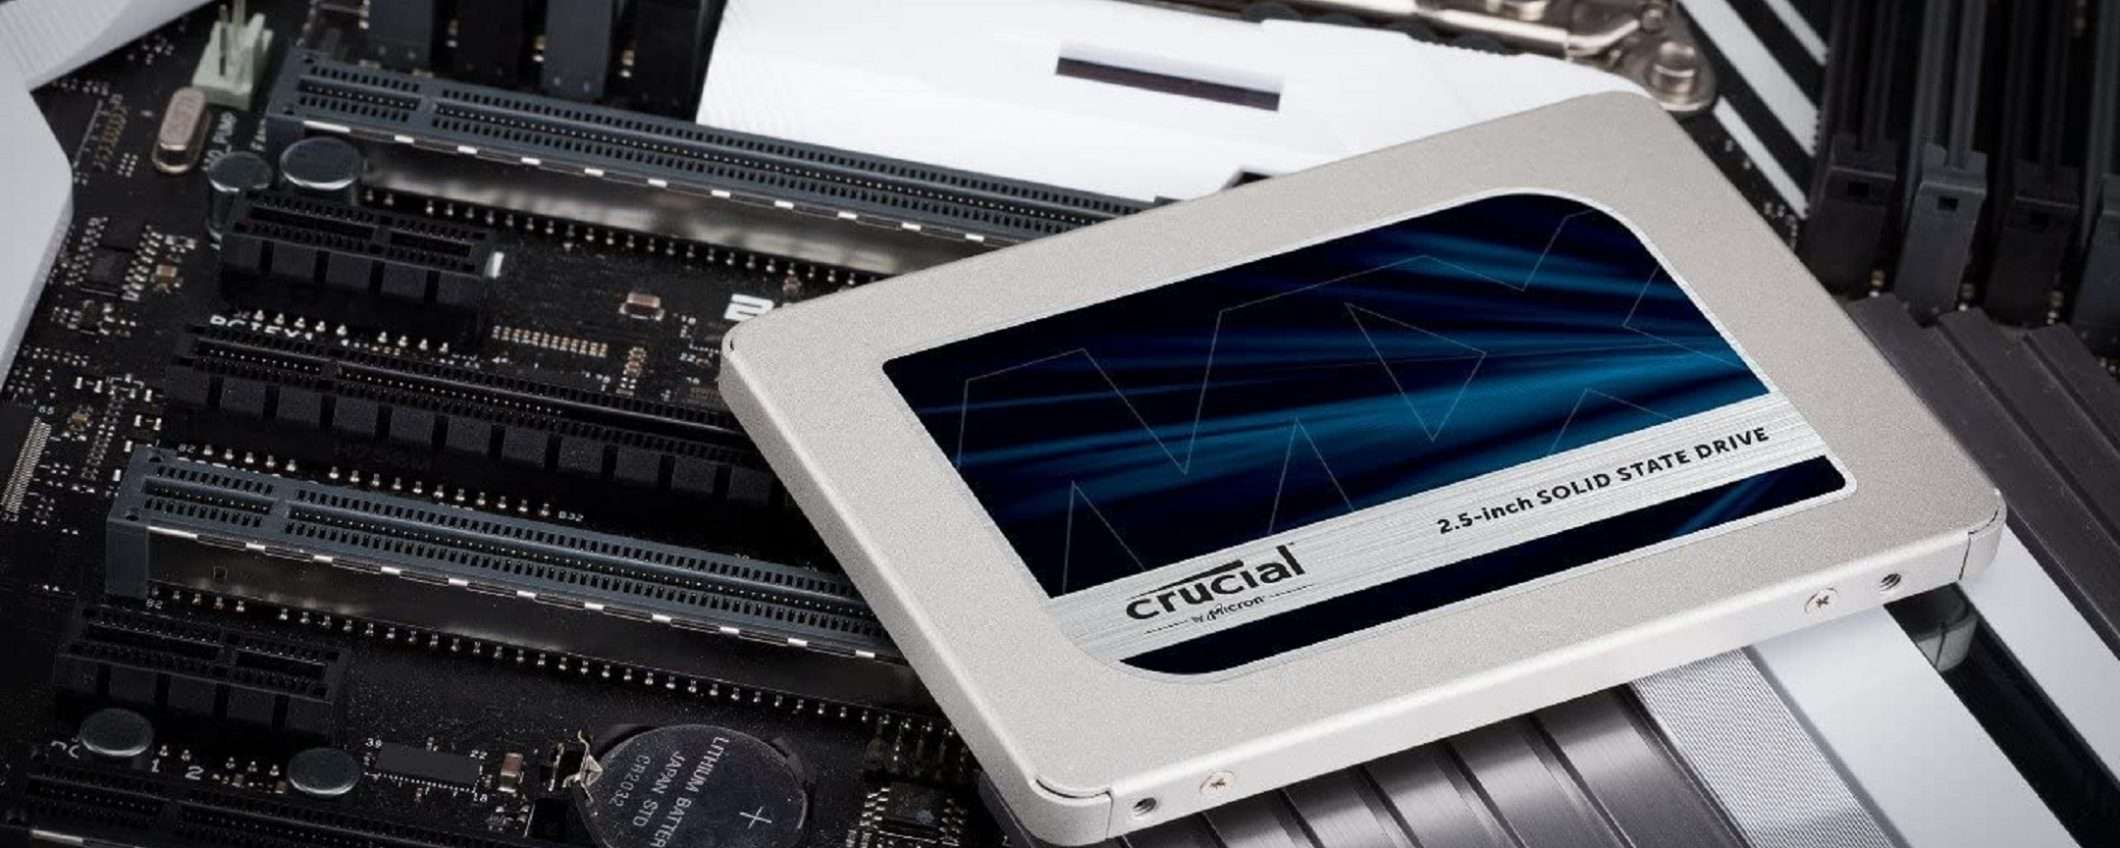 SSD Crucial MX500 1TB a meno di 100 euro su Amazon